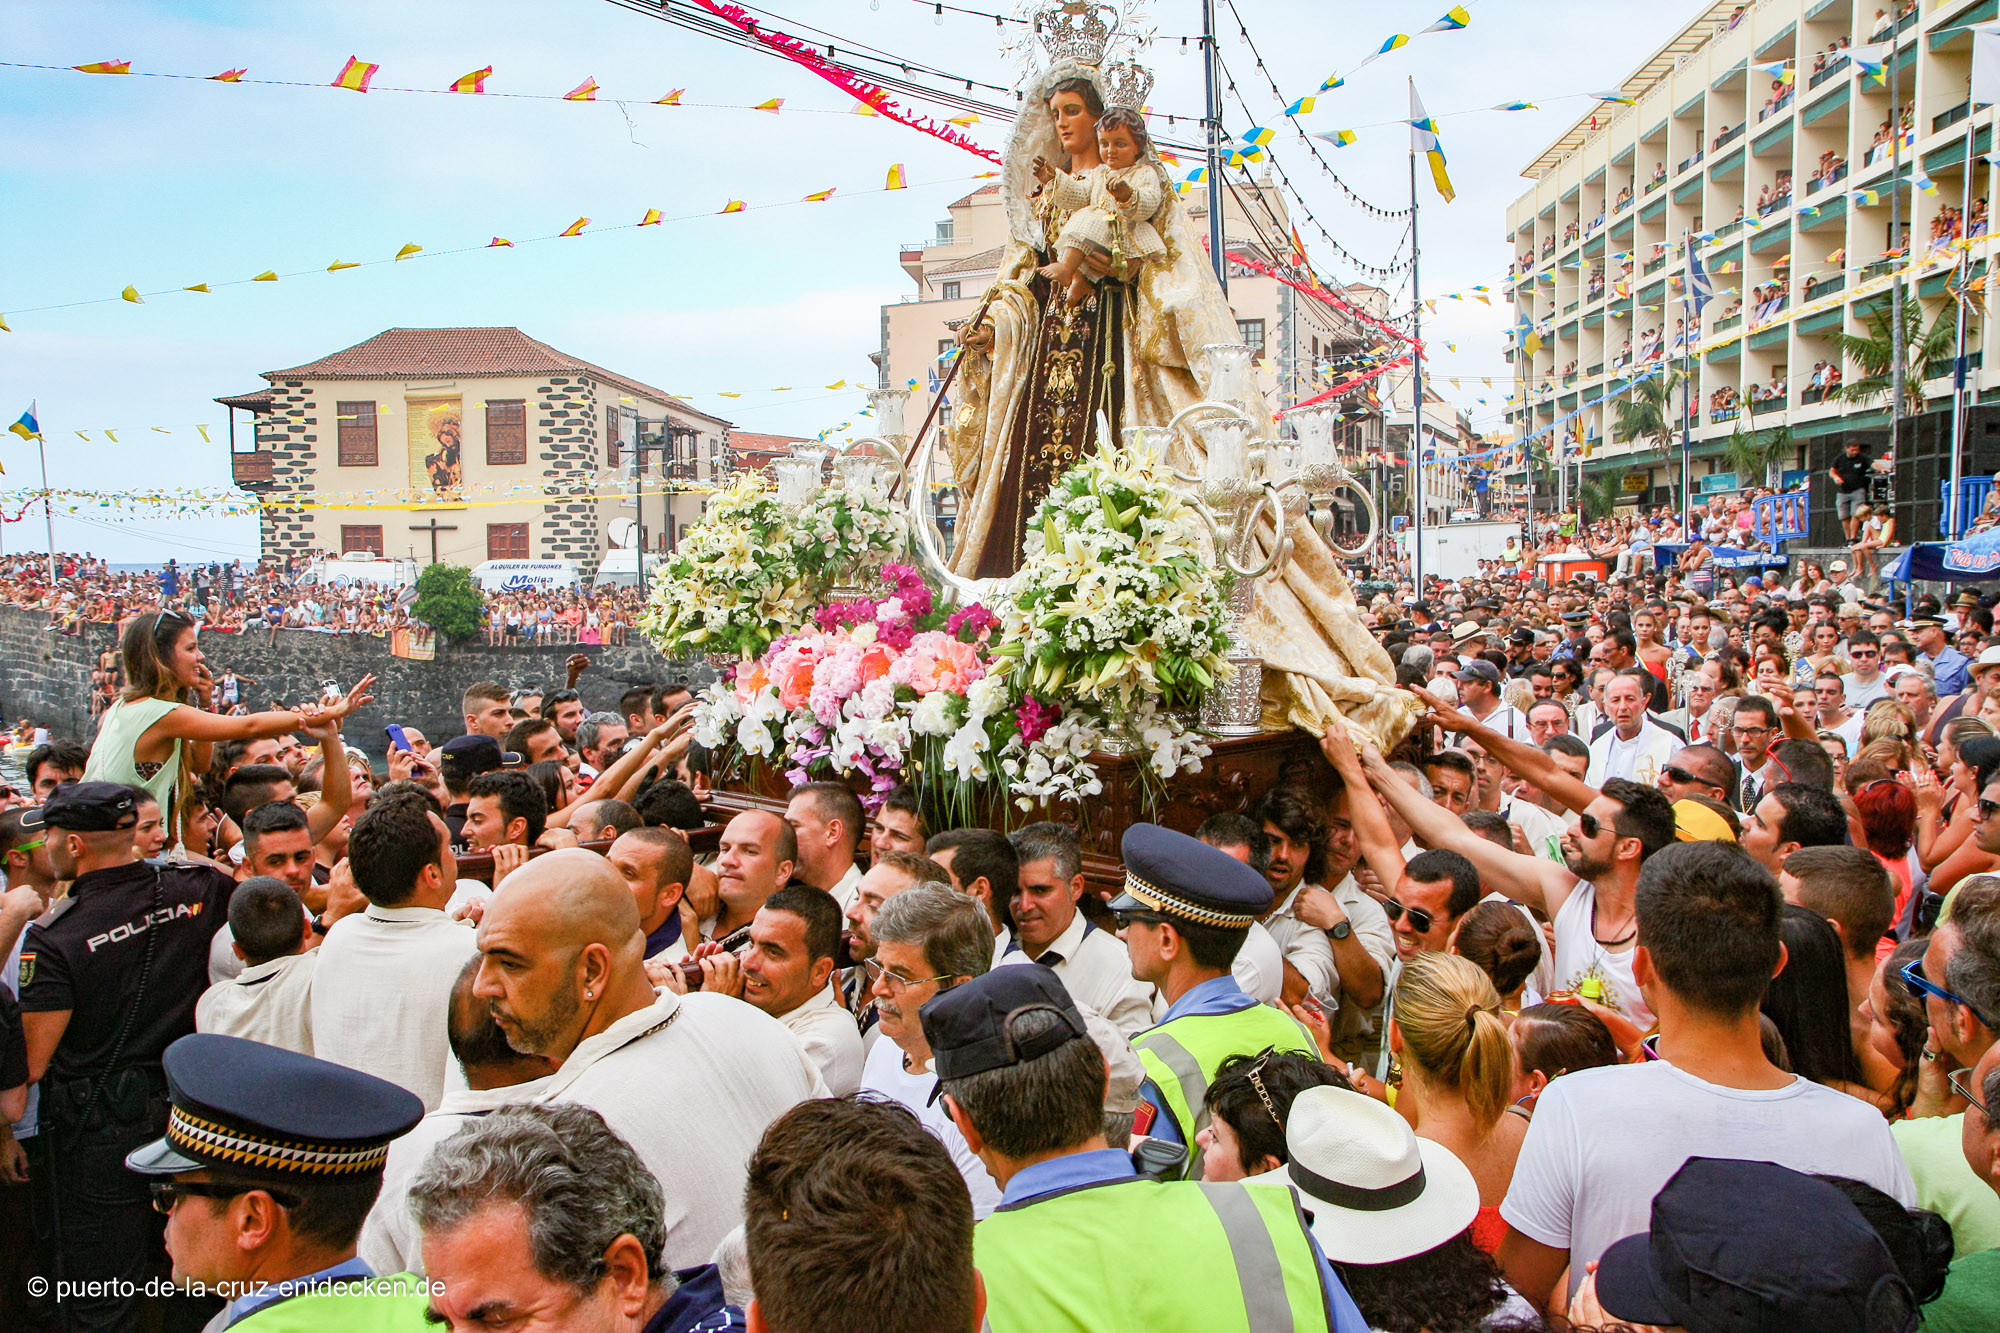 Zehntausende Menschen erwarten die Prozession mit der Jungfrau Carmen und dem Heiligen San Telmo am Hafen.